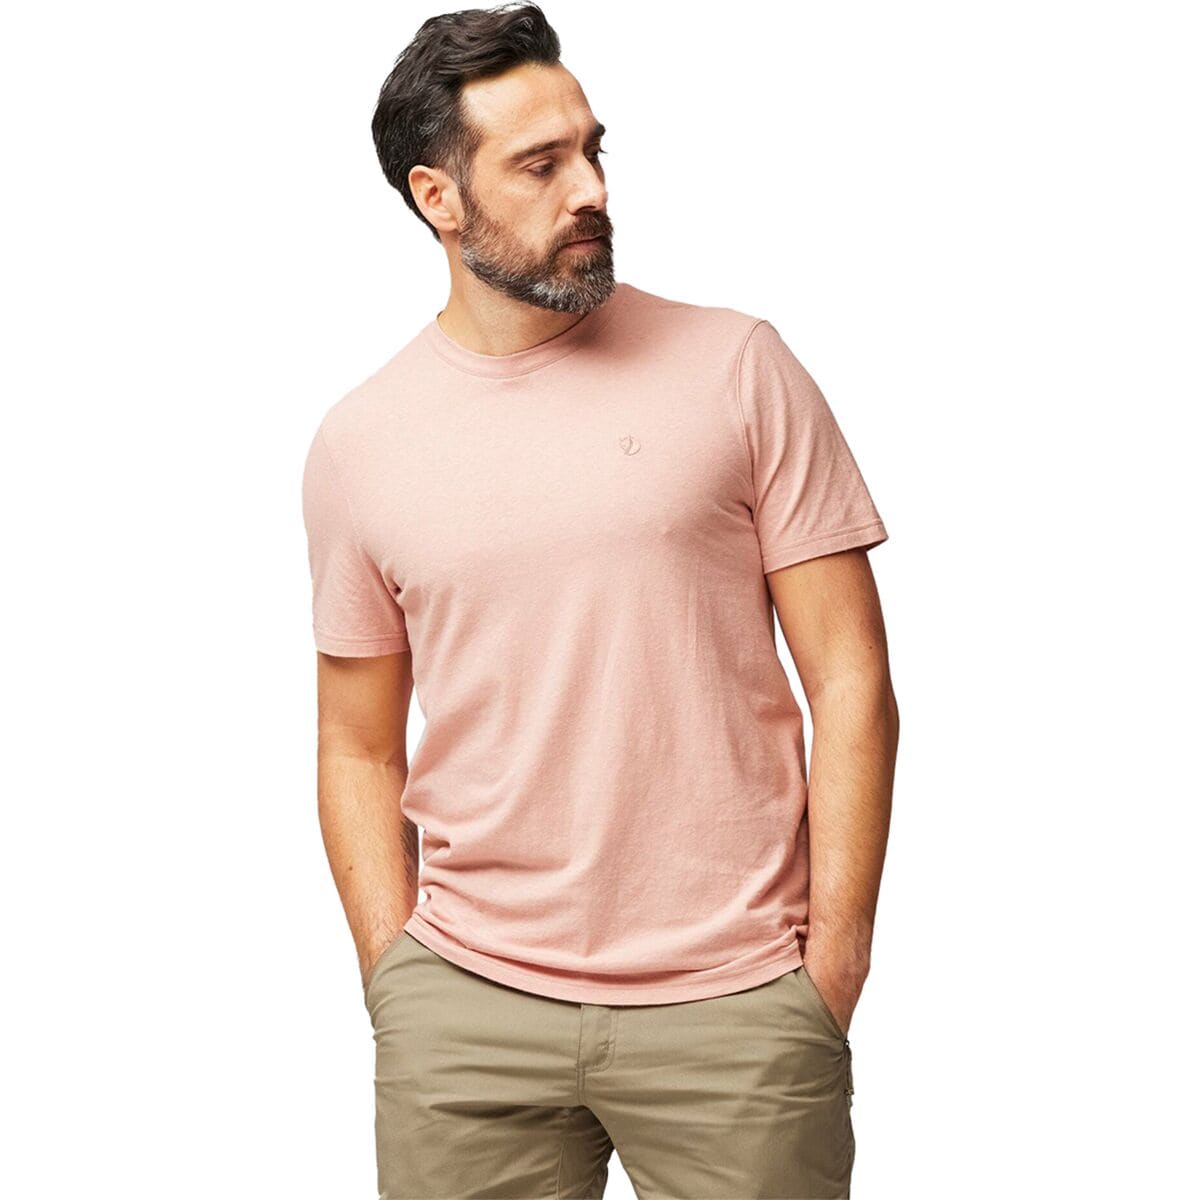 Hemp Blend T-Shirt - Men